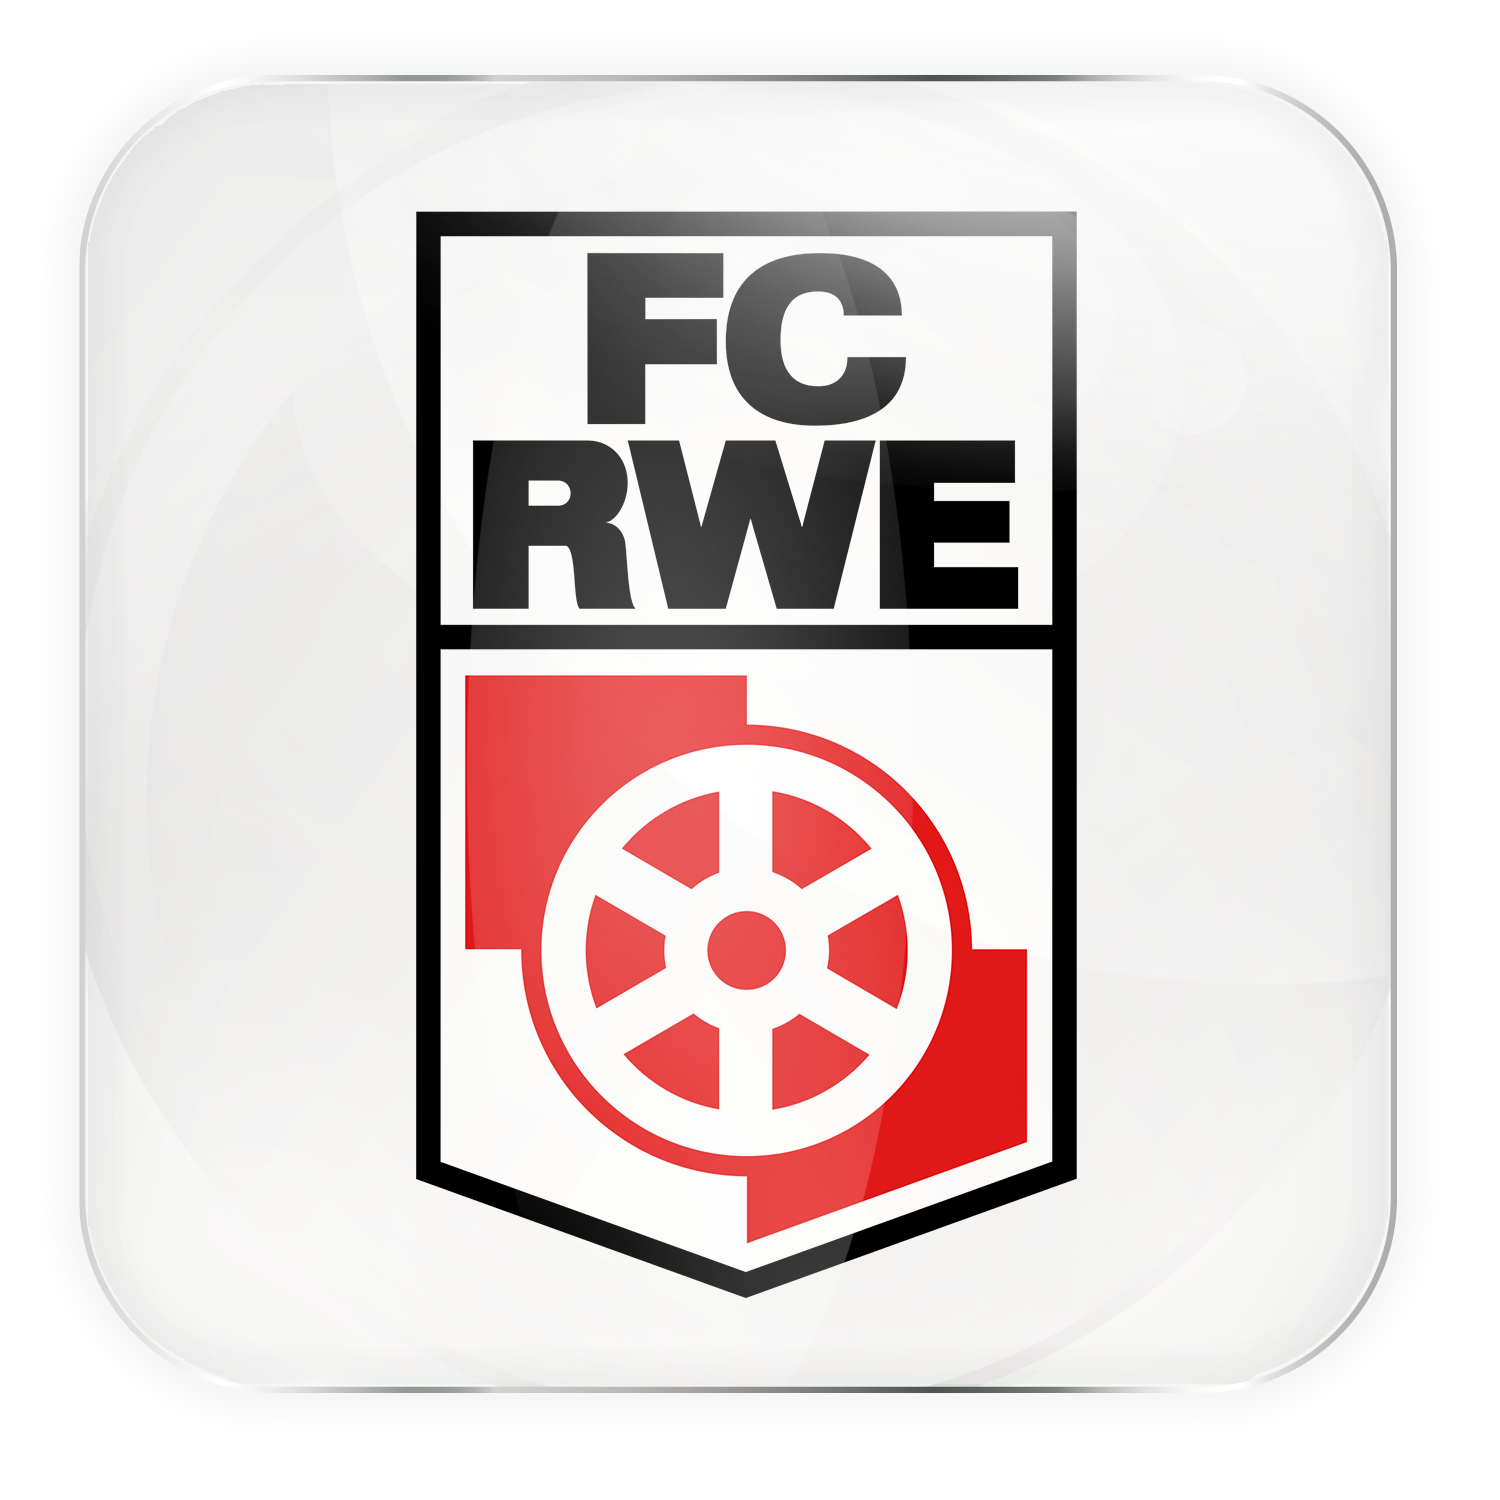 FC ROT-WEISS ERFURT